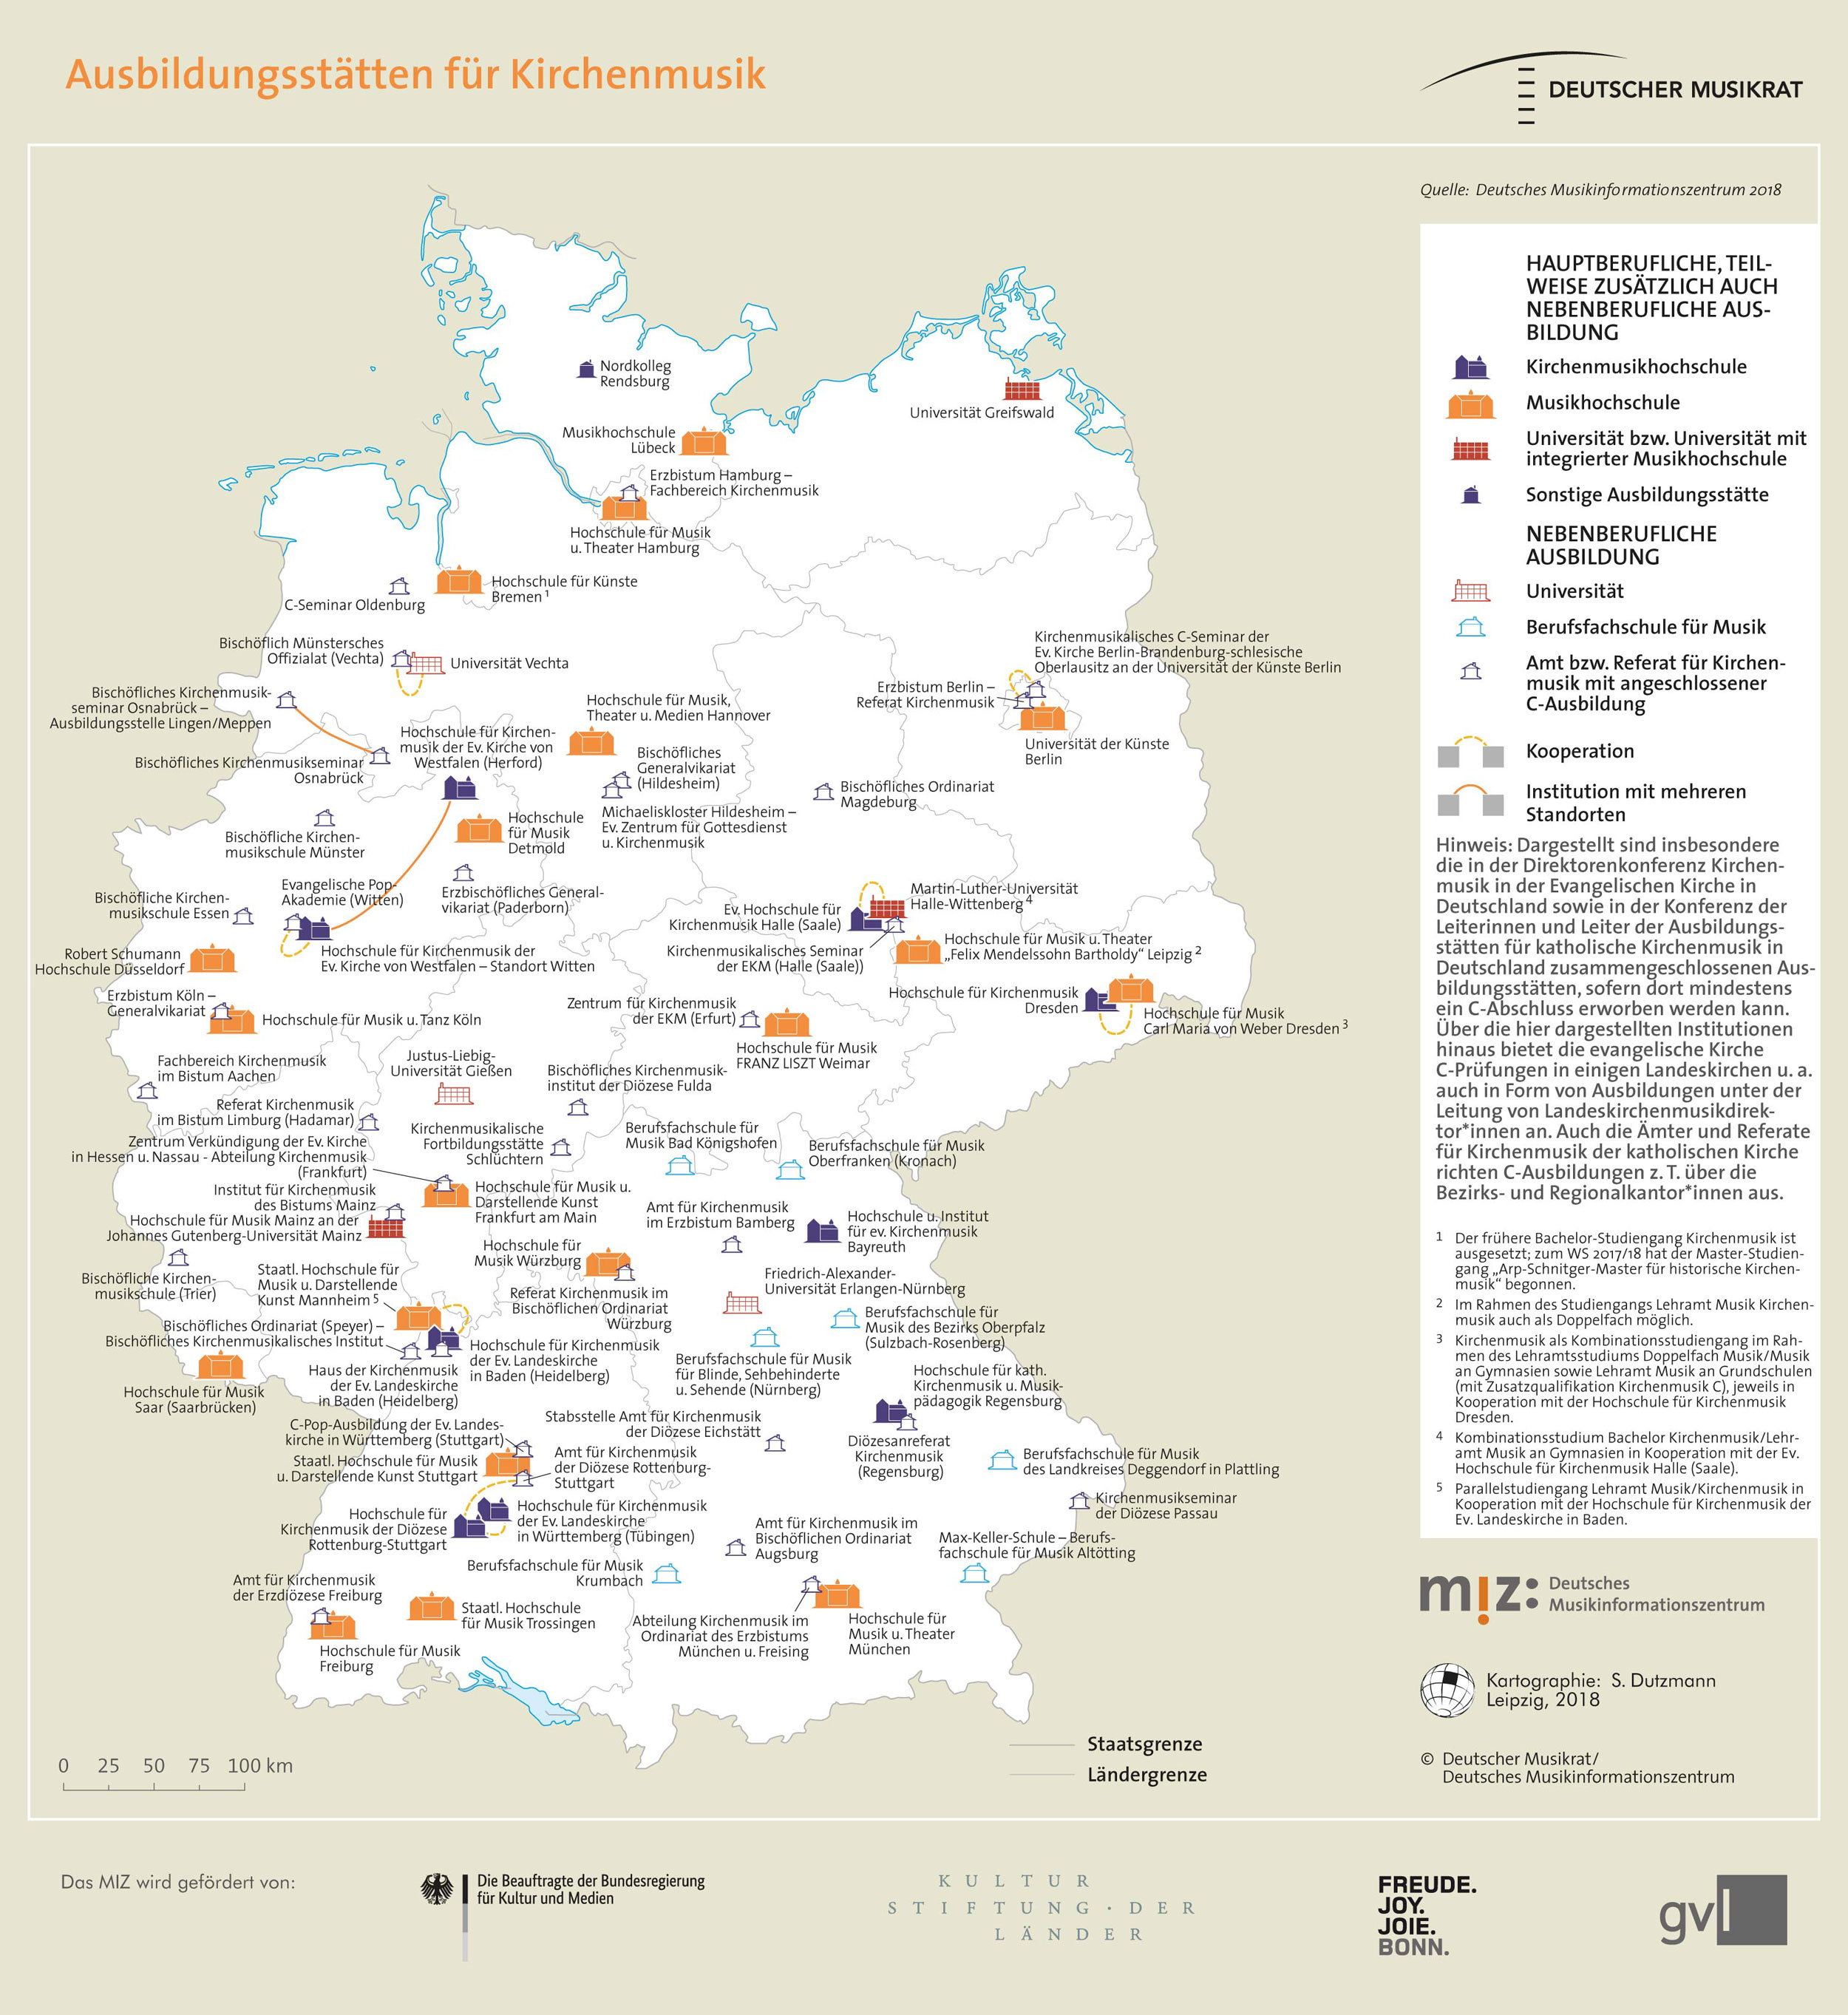 Topografie: Ausbildungsstätten für Kirchenmusik.